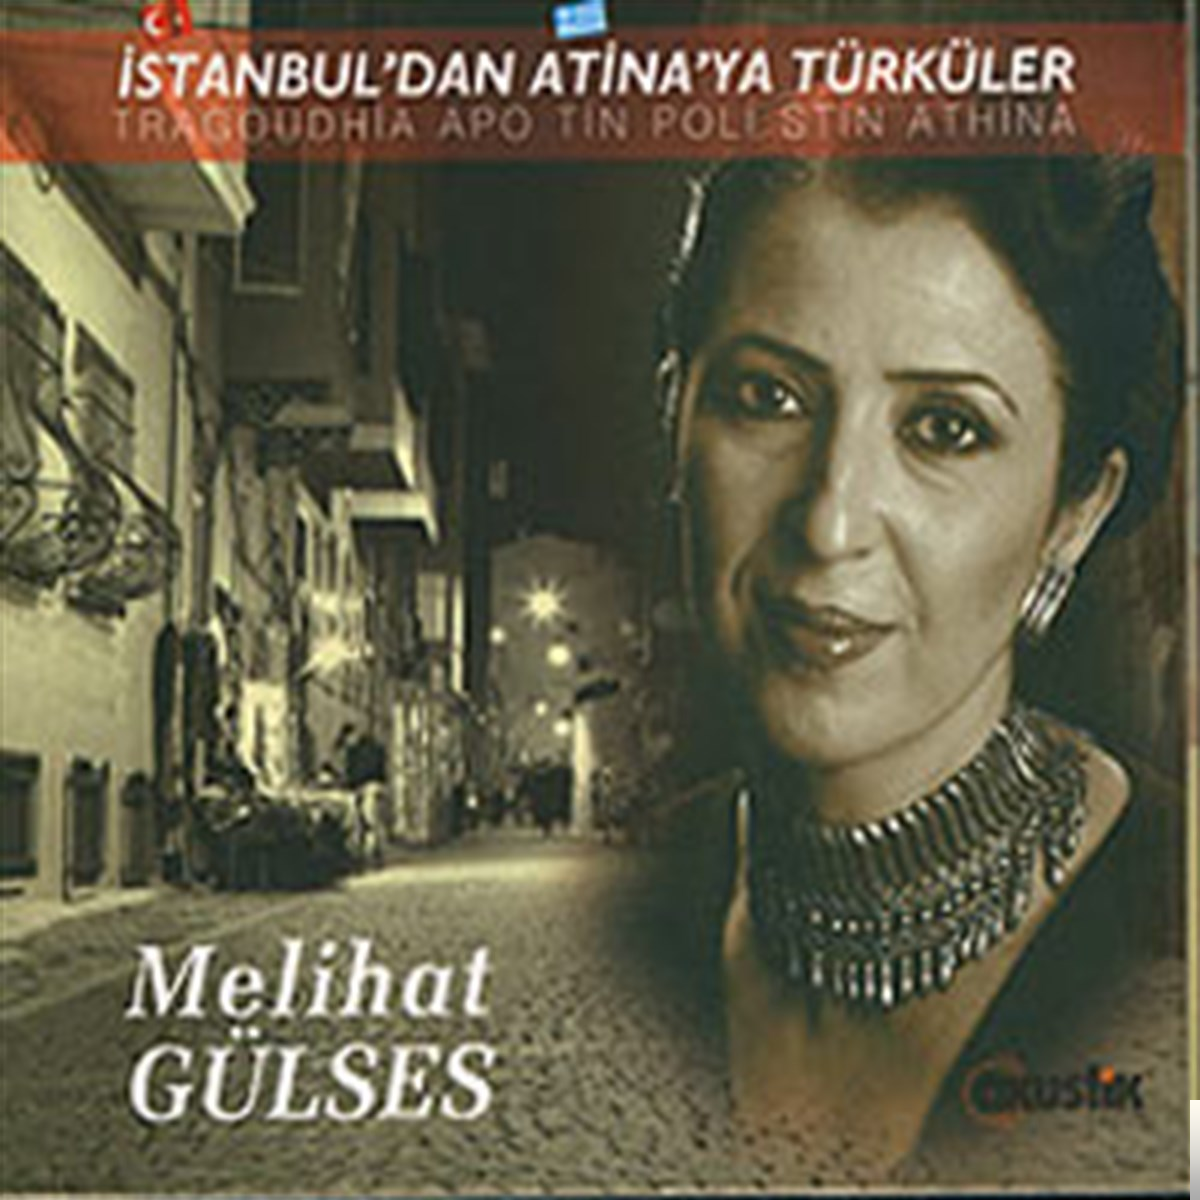 İstanbuldan Atinaya Türküler (2000)